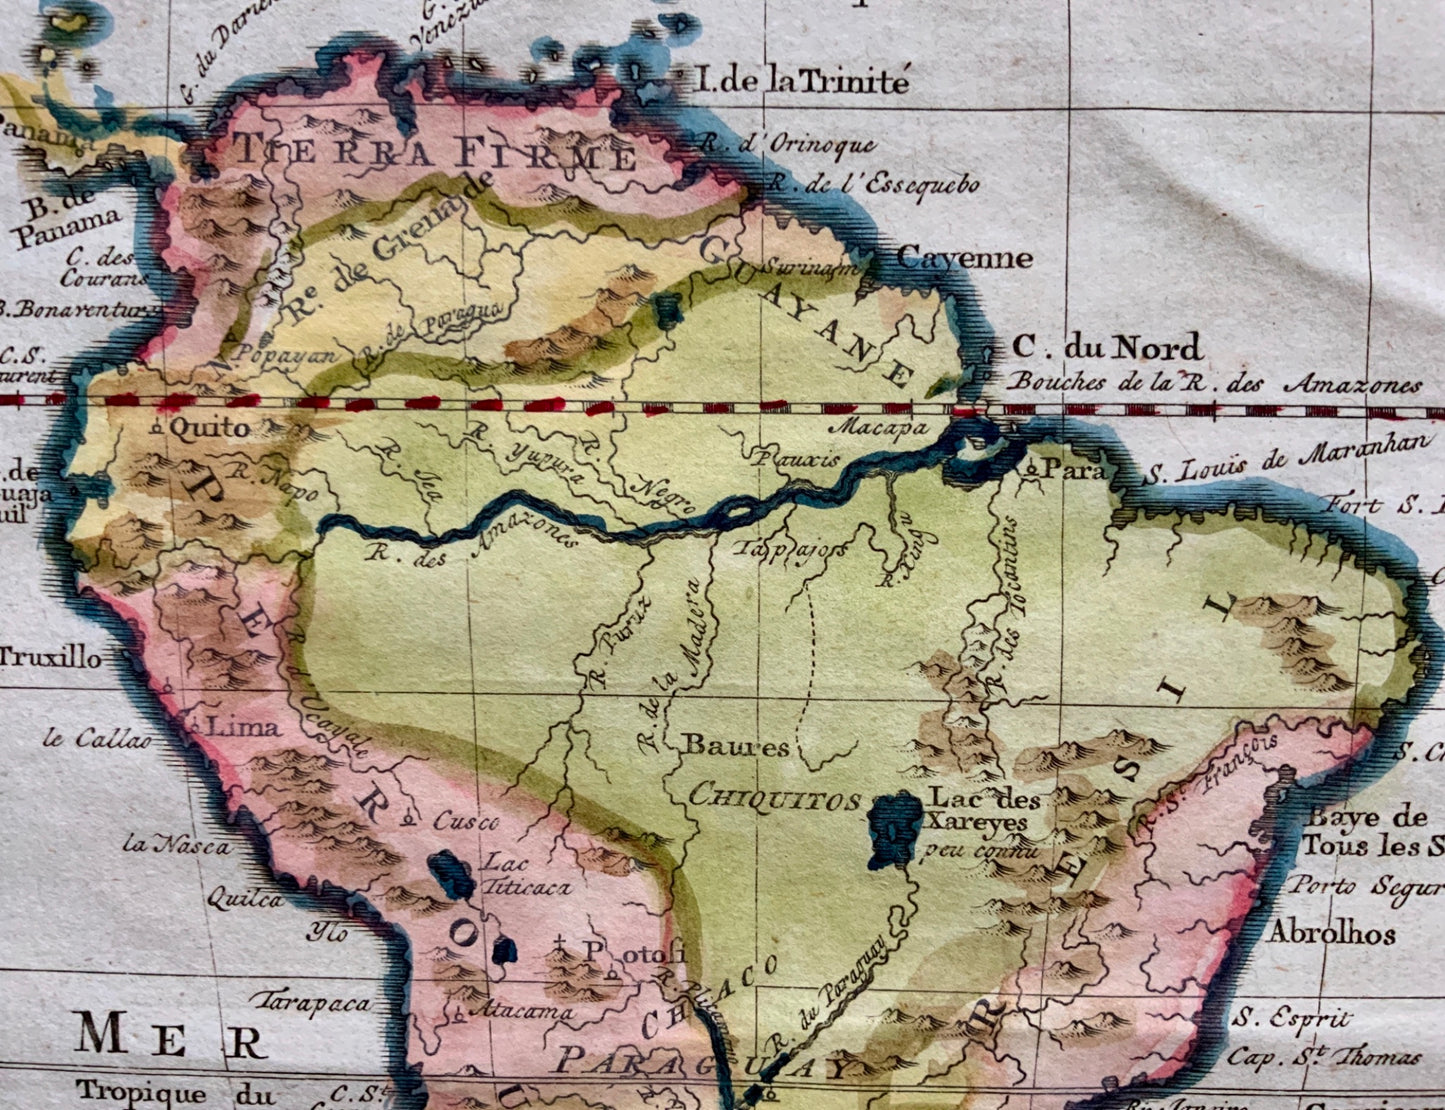 1774 Bellin; Krevelt - Amérique Meridionale - Map of South America